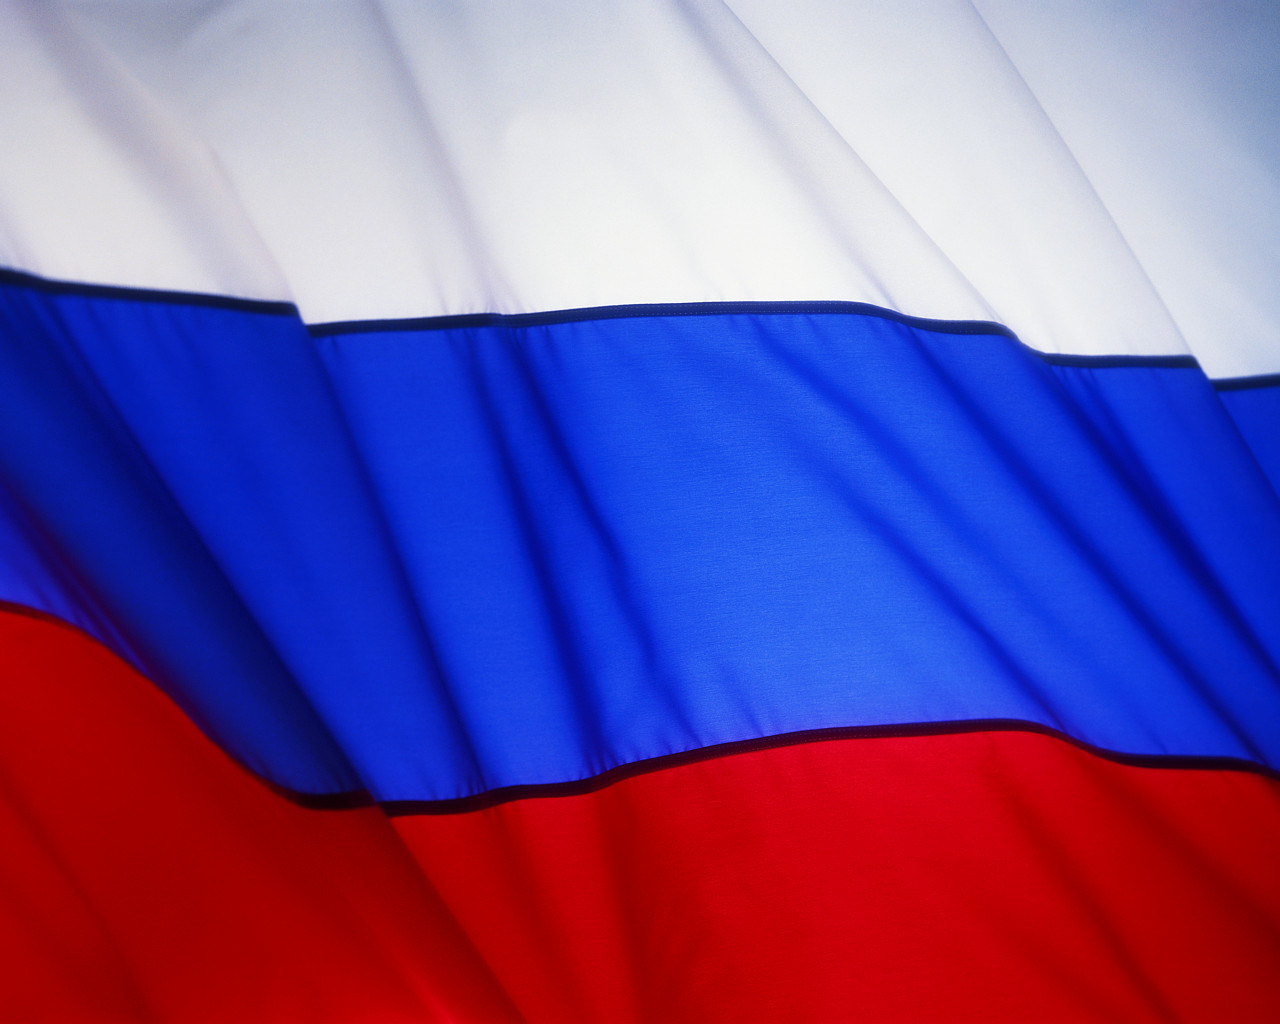 “Η ρωσική οικονομία είναι σε κρίση”